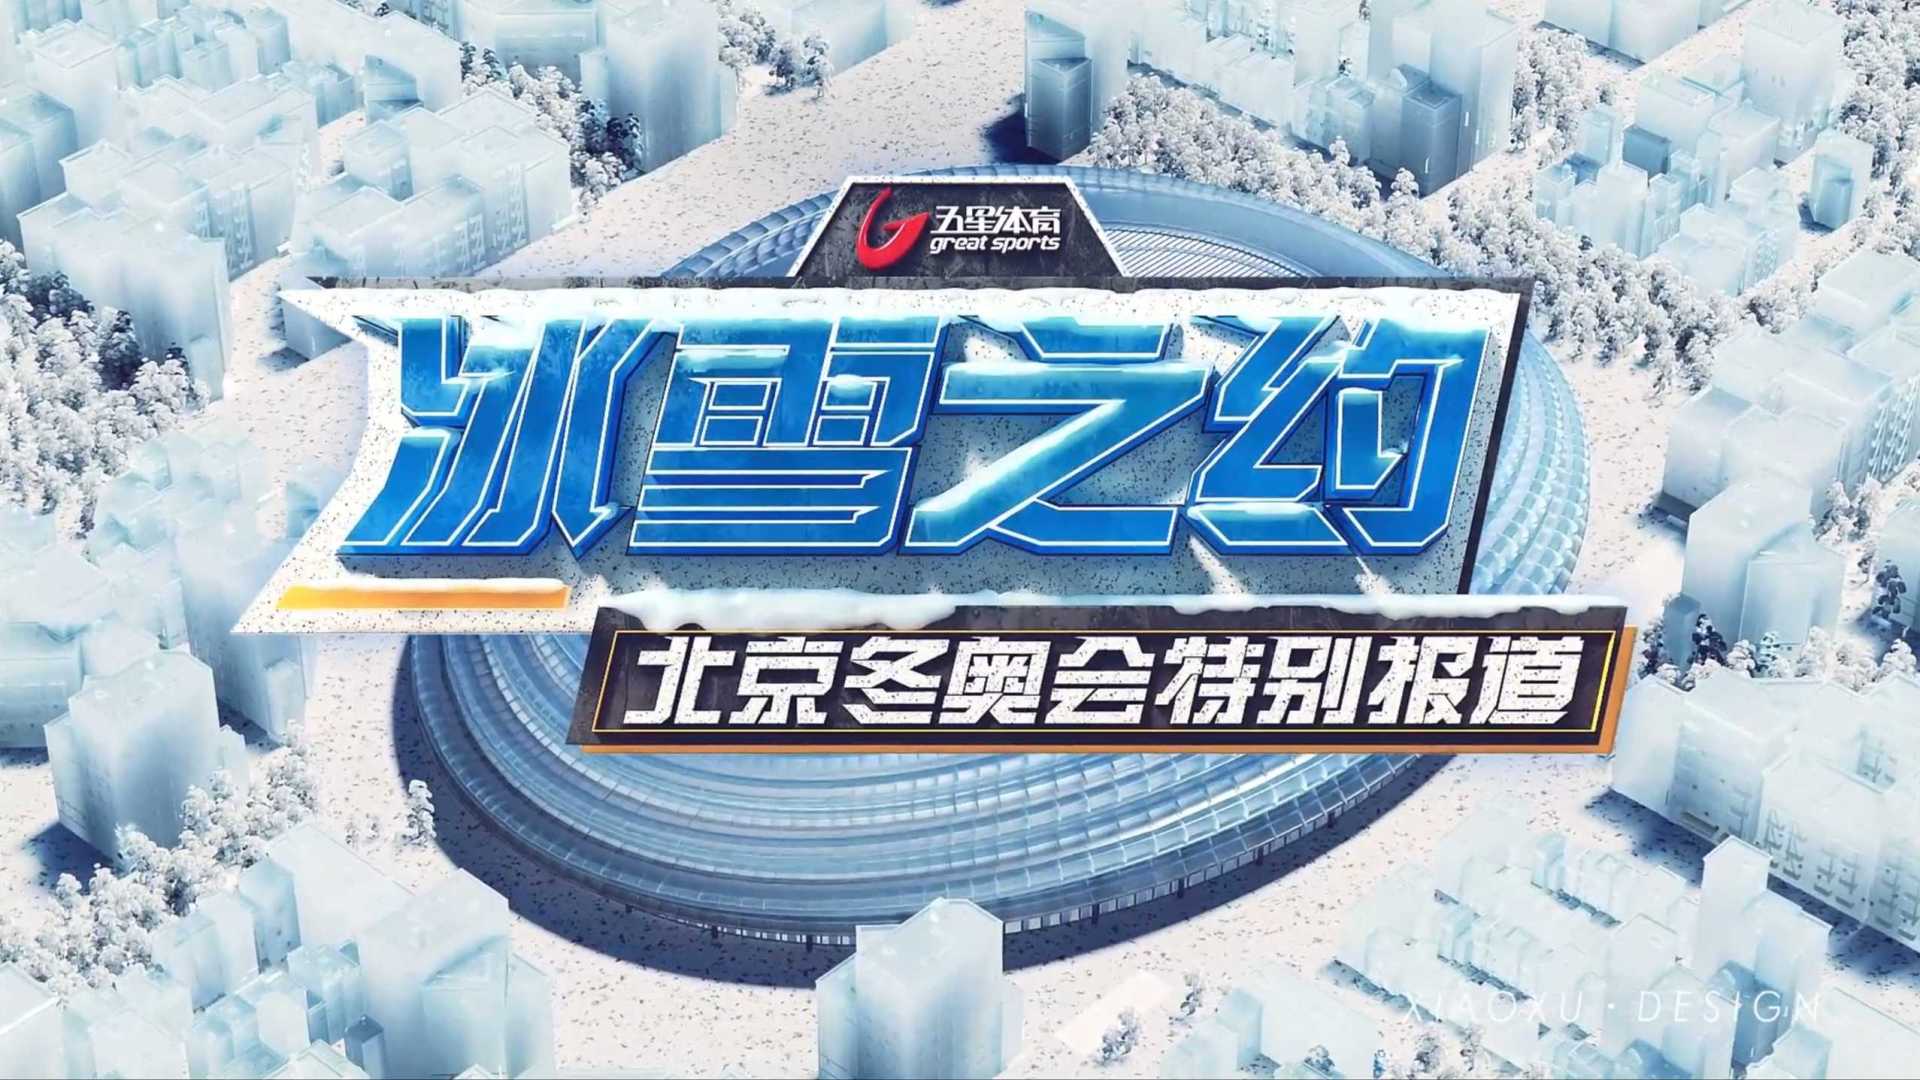 北京冬奥会新闻 片头